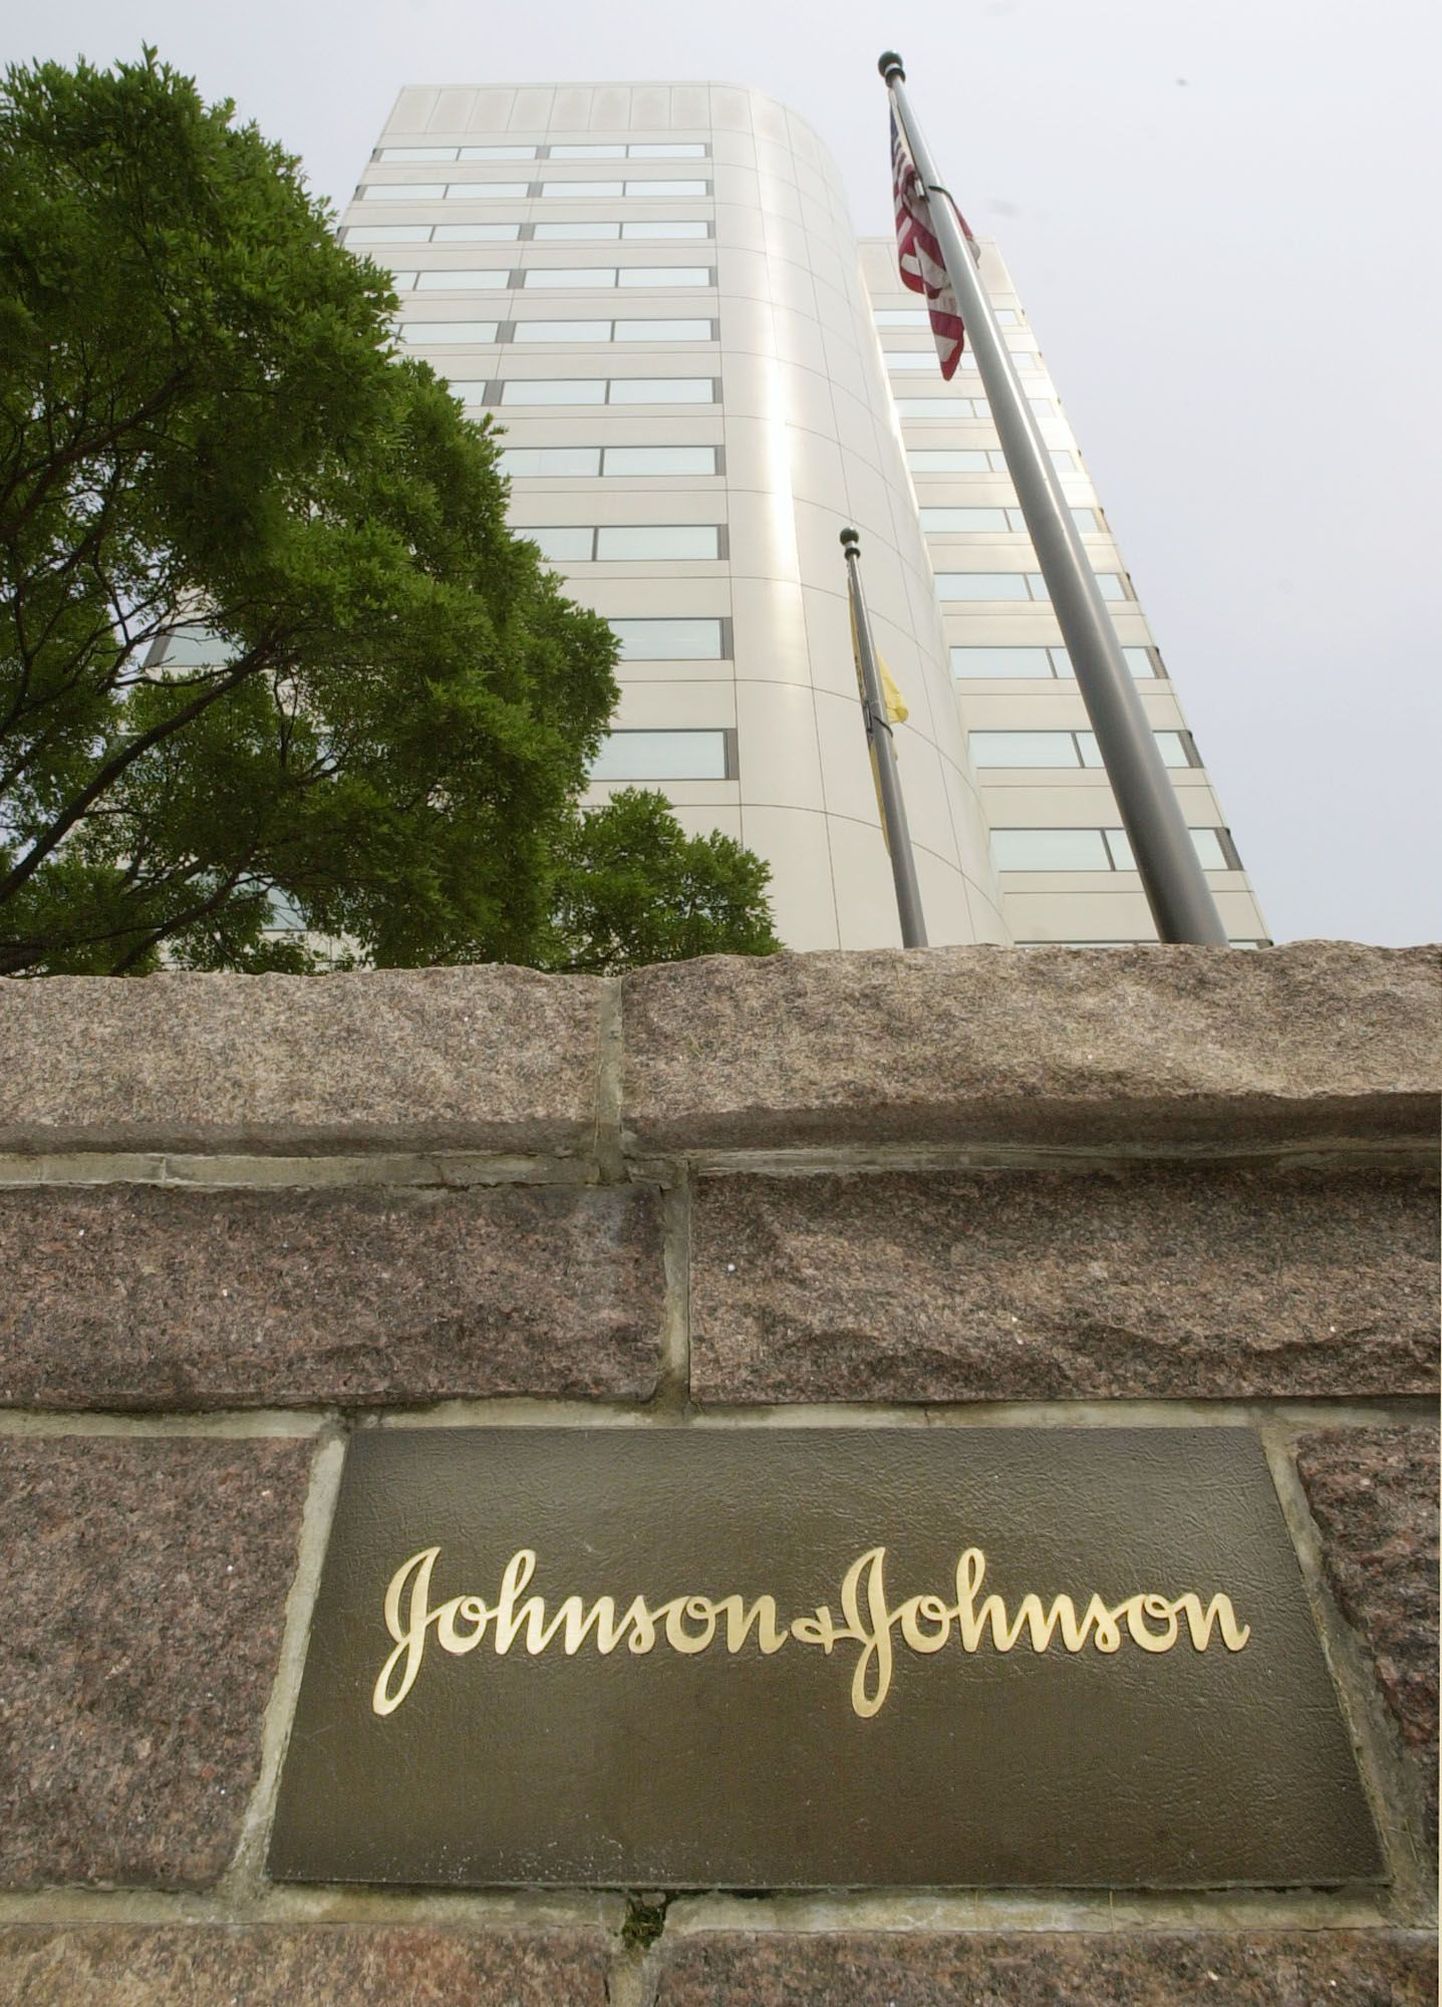 Johnson & Johnson sai 2,2 miljardit eurot trahvi.